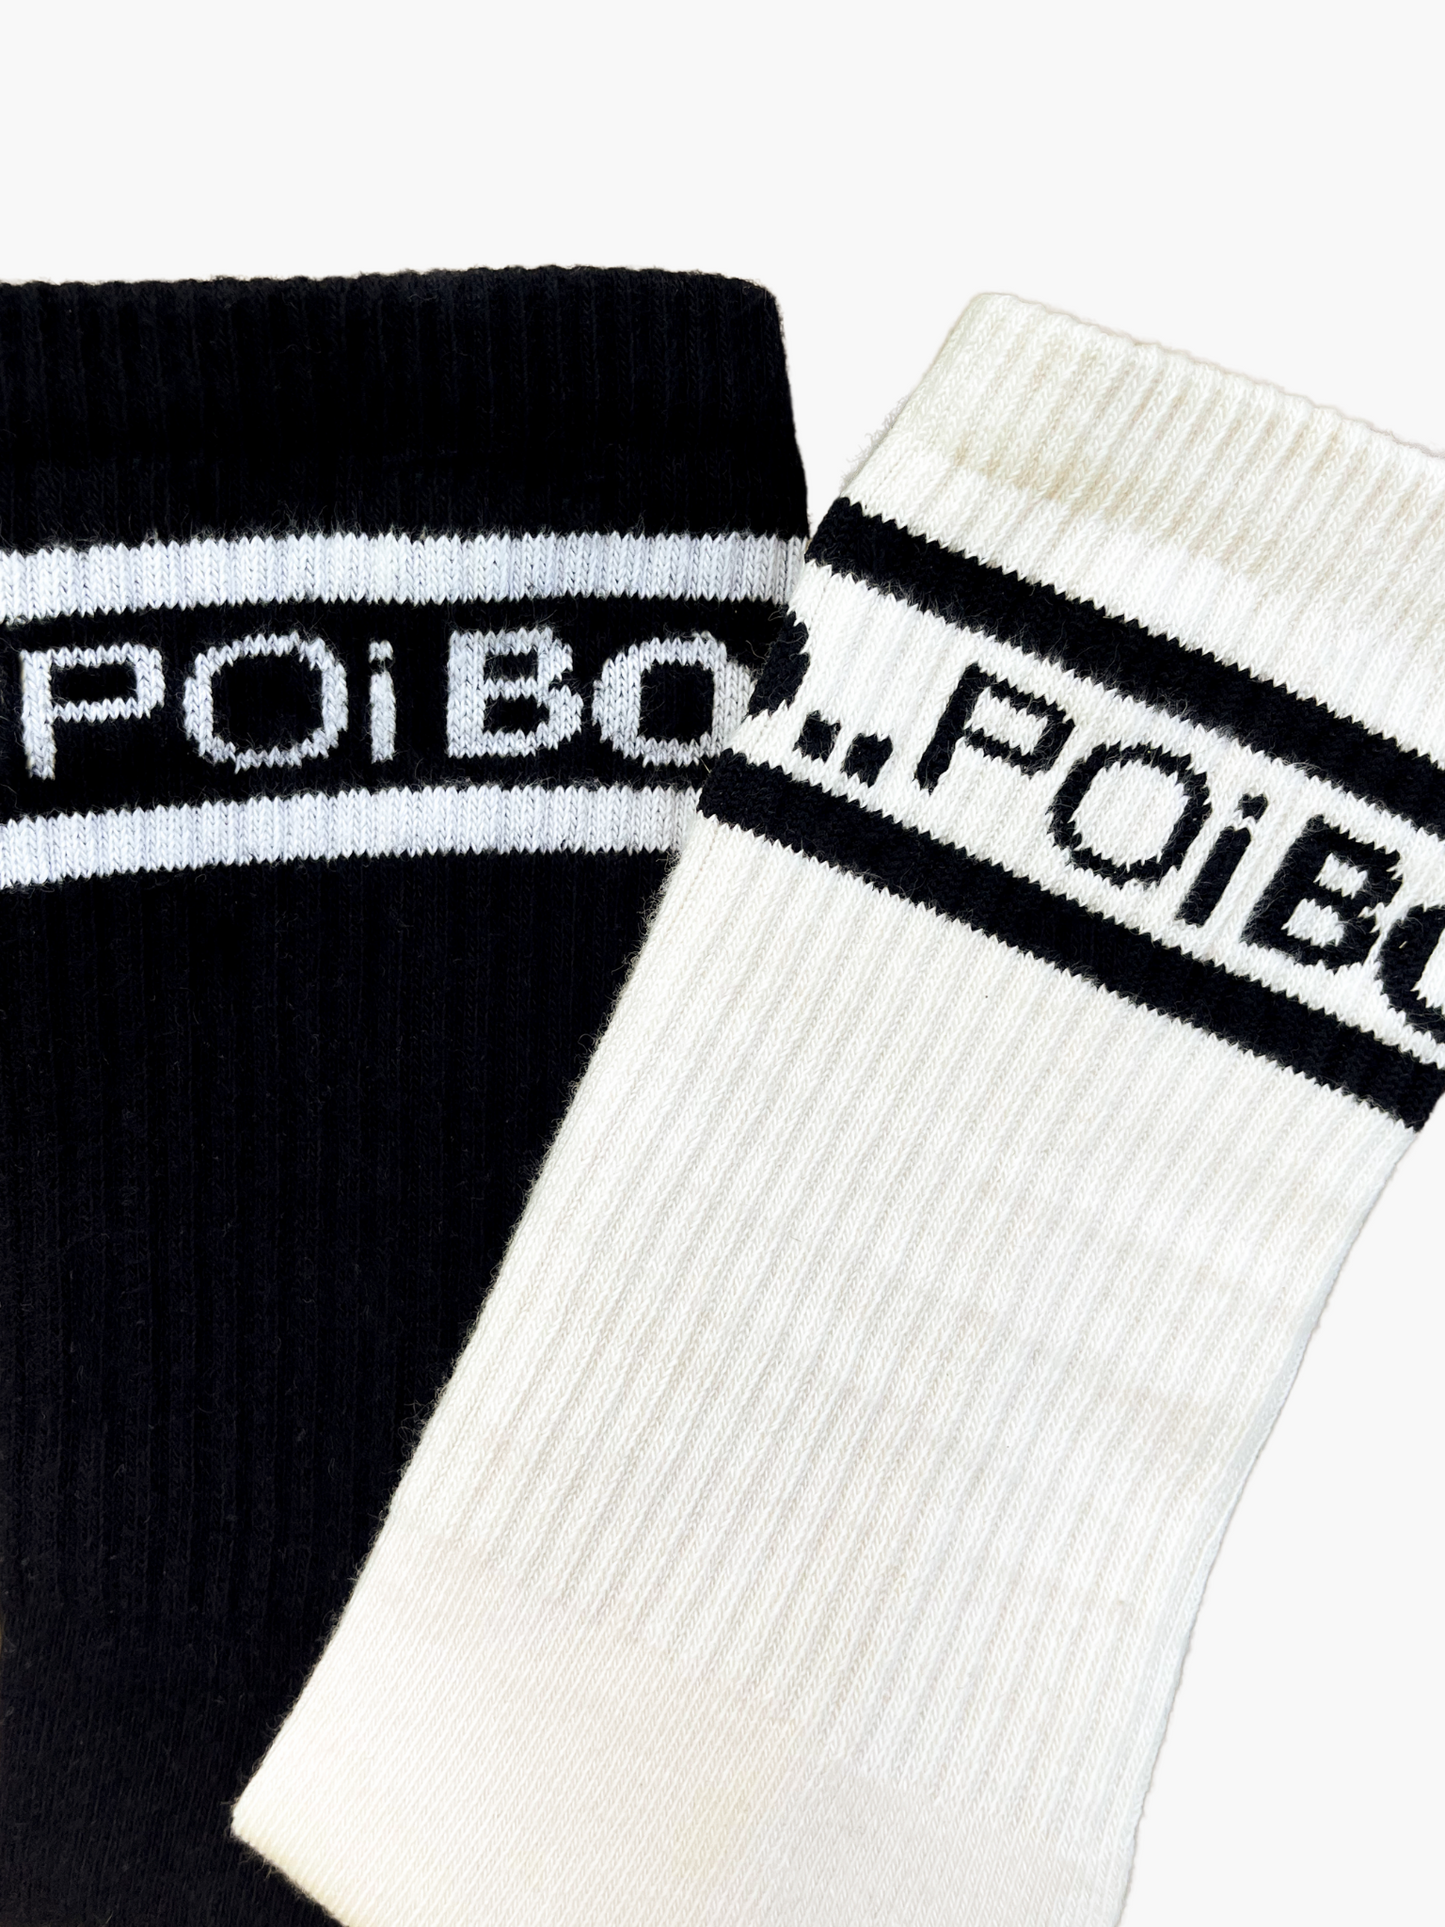 PB Socks